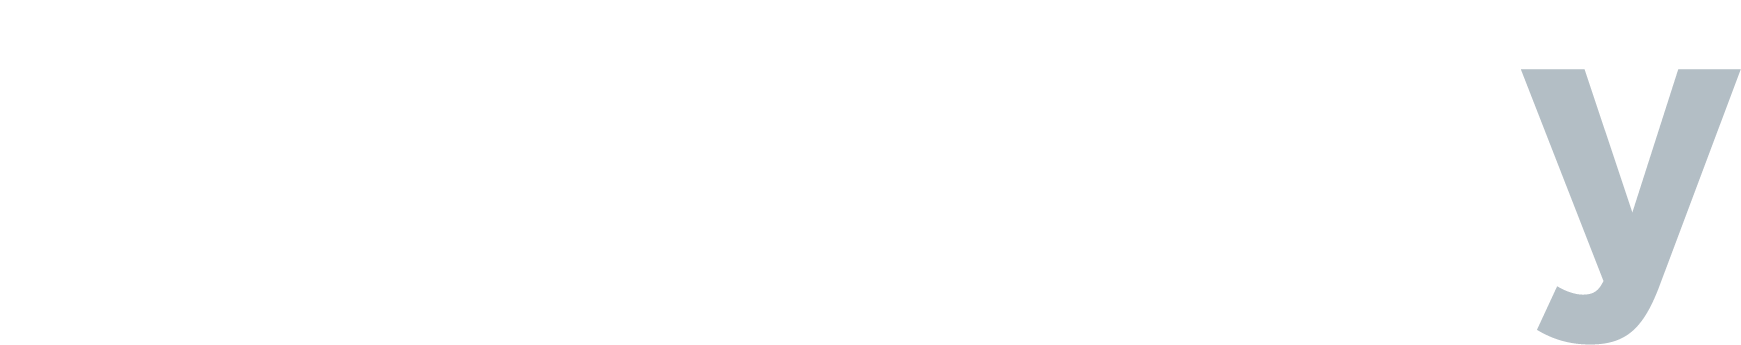 Comstory-newsletter-logo-white